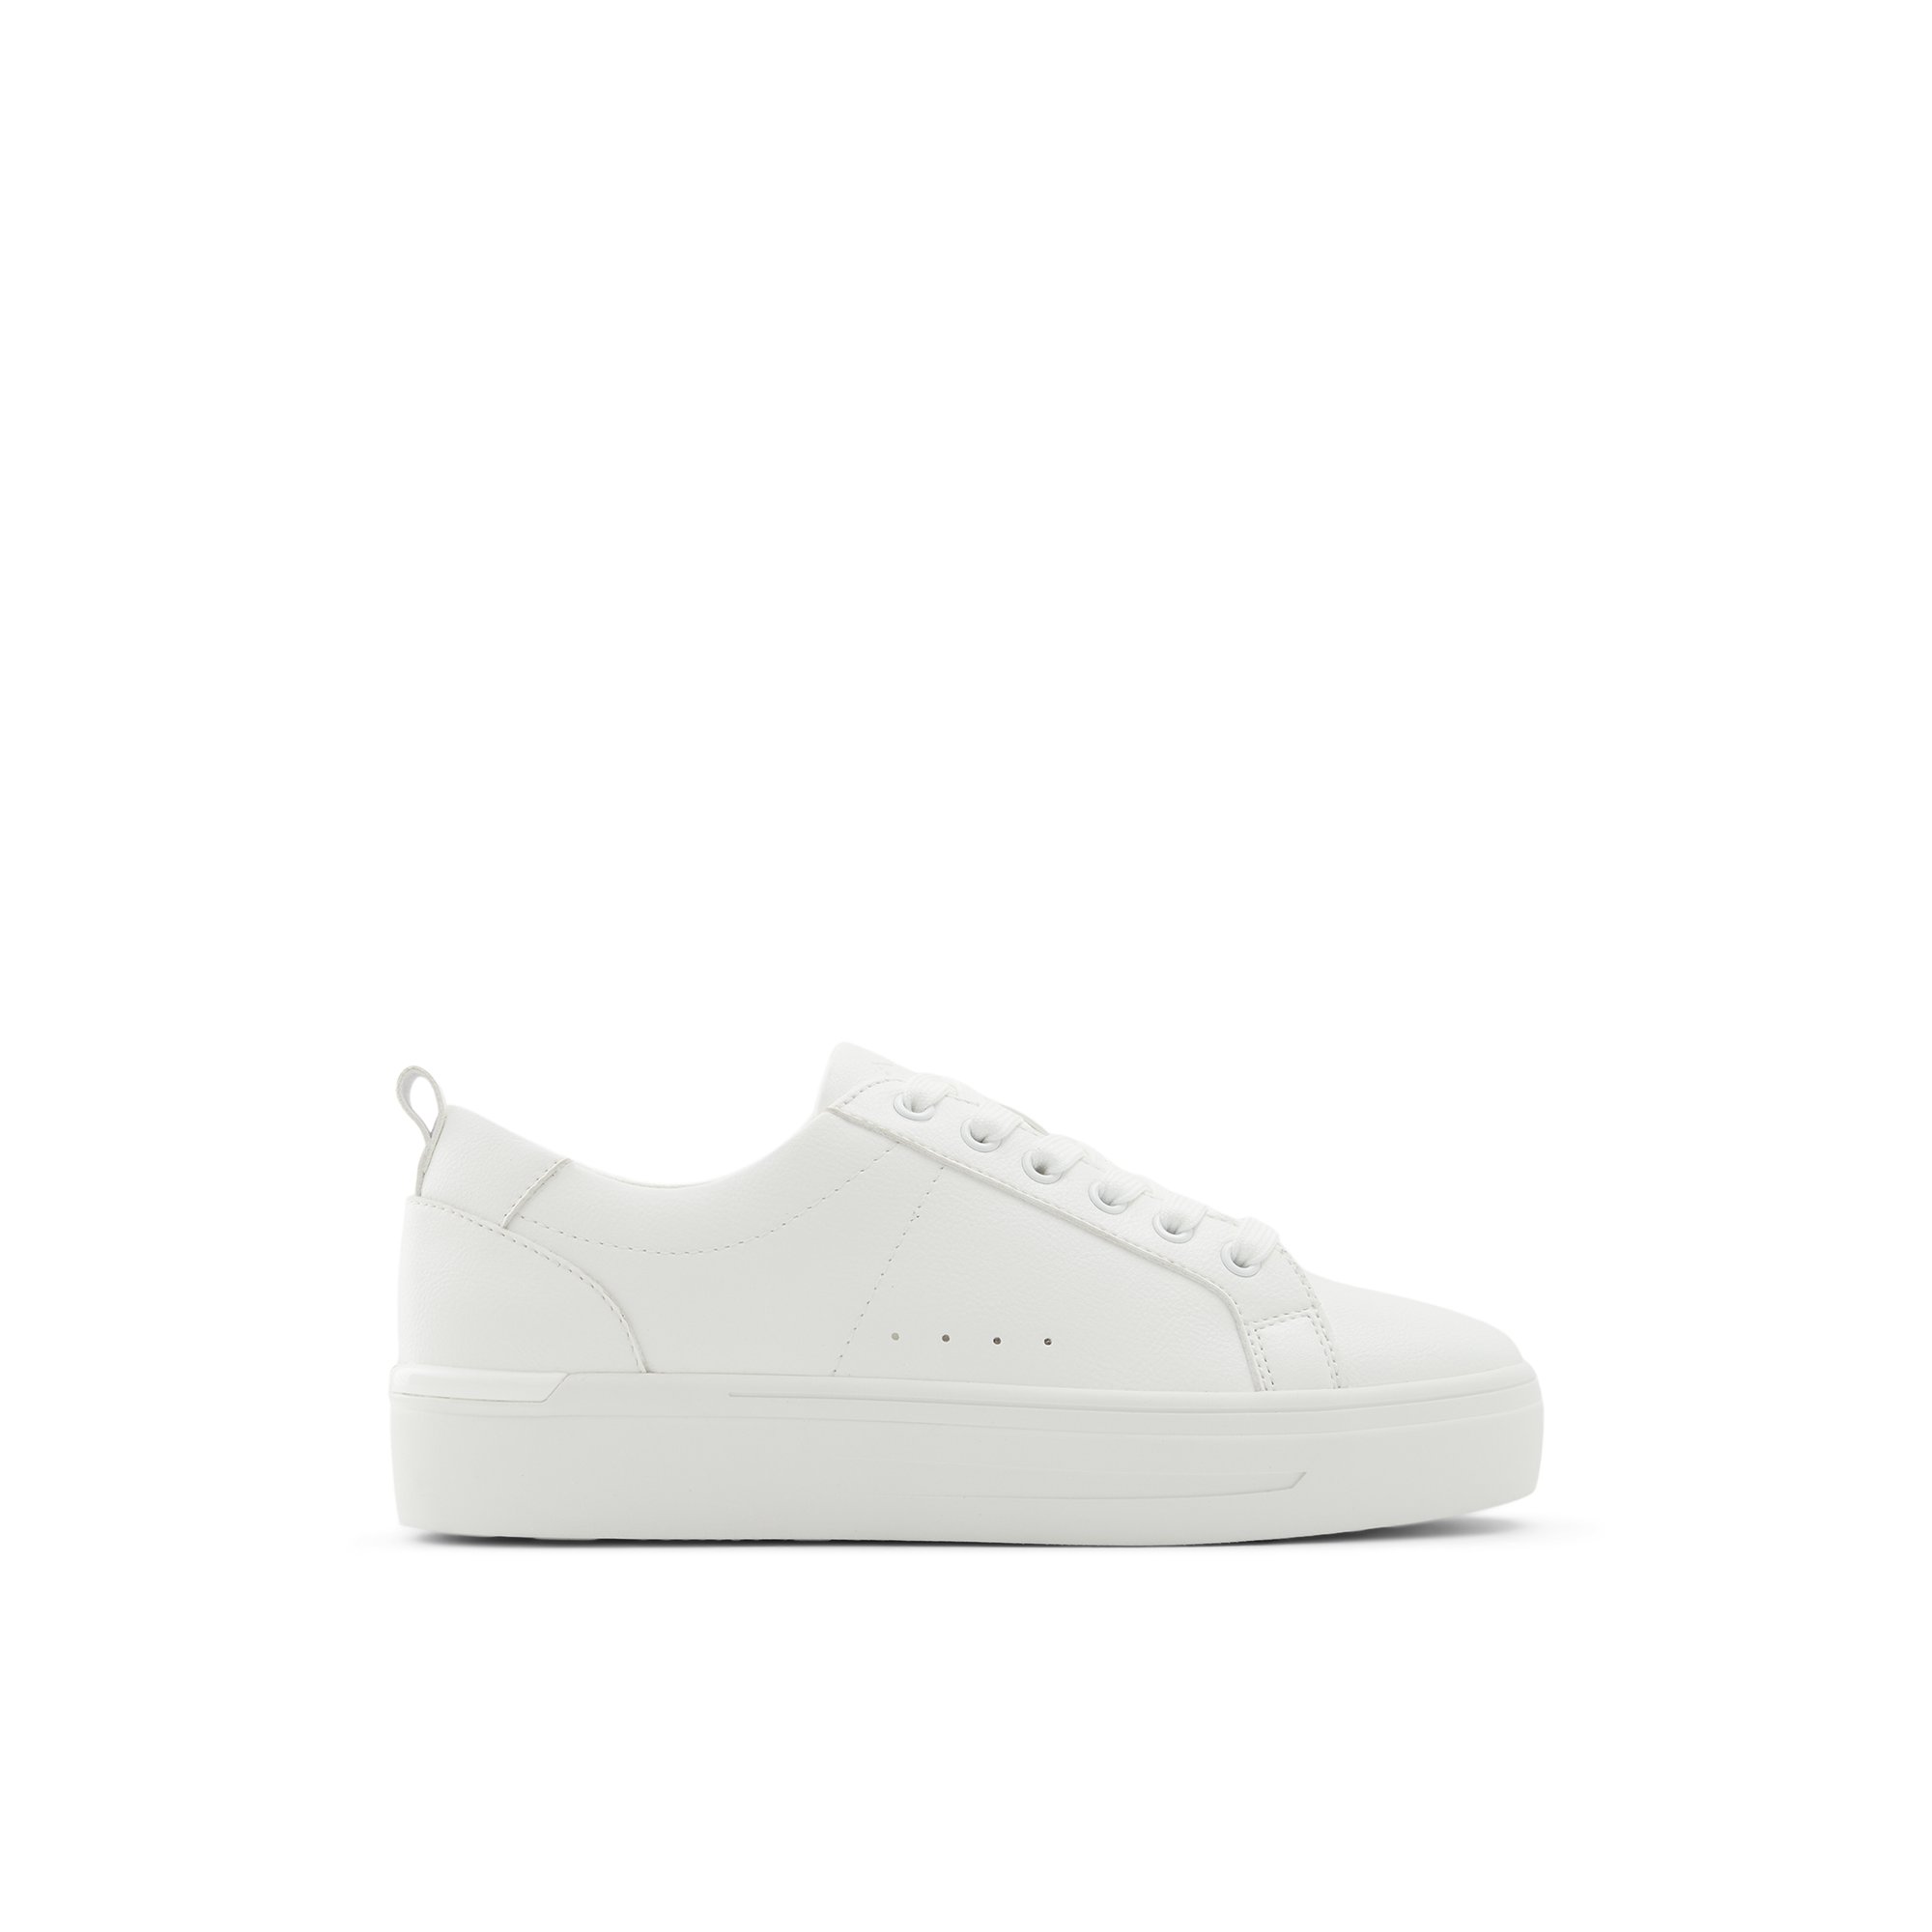 ALDO Meadow - Women's Low Top Sneaker Sneakers - White